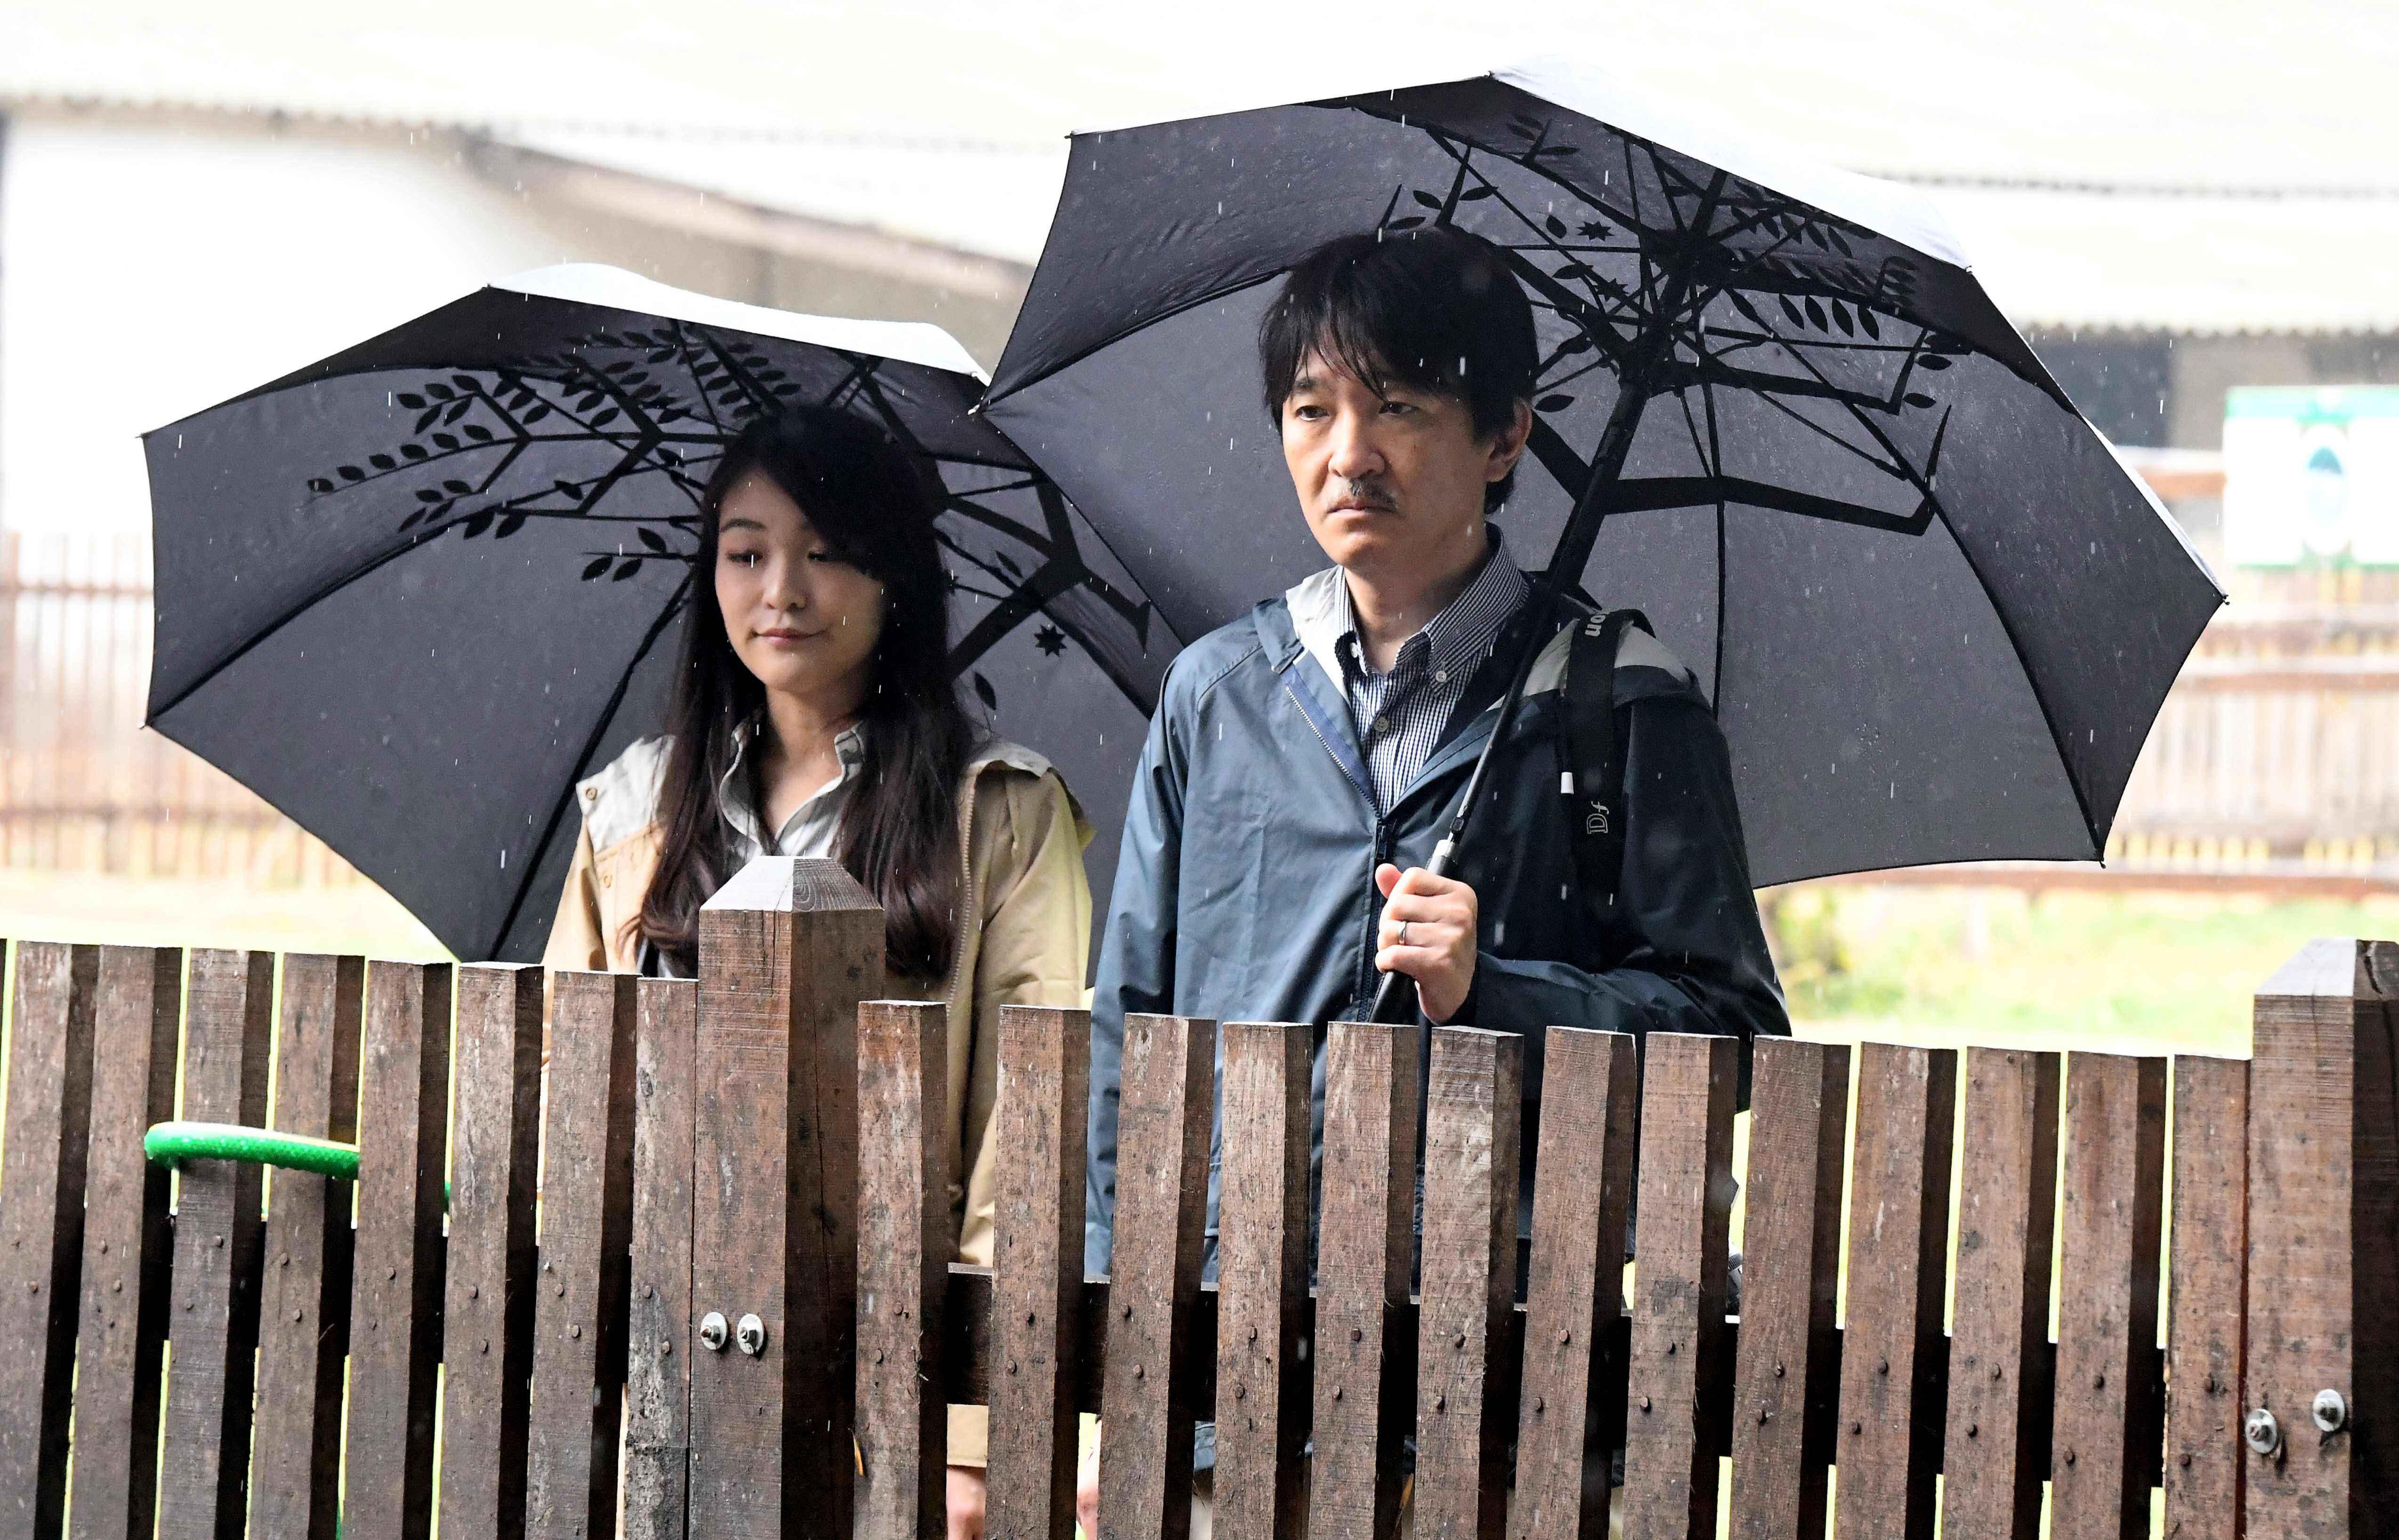 الأمير أكيشينو وأميرة موكا يحملان المظلات خلال جولتهما بالمجر